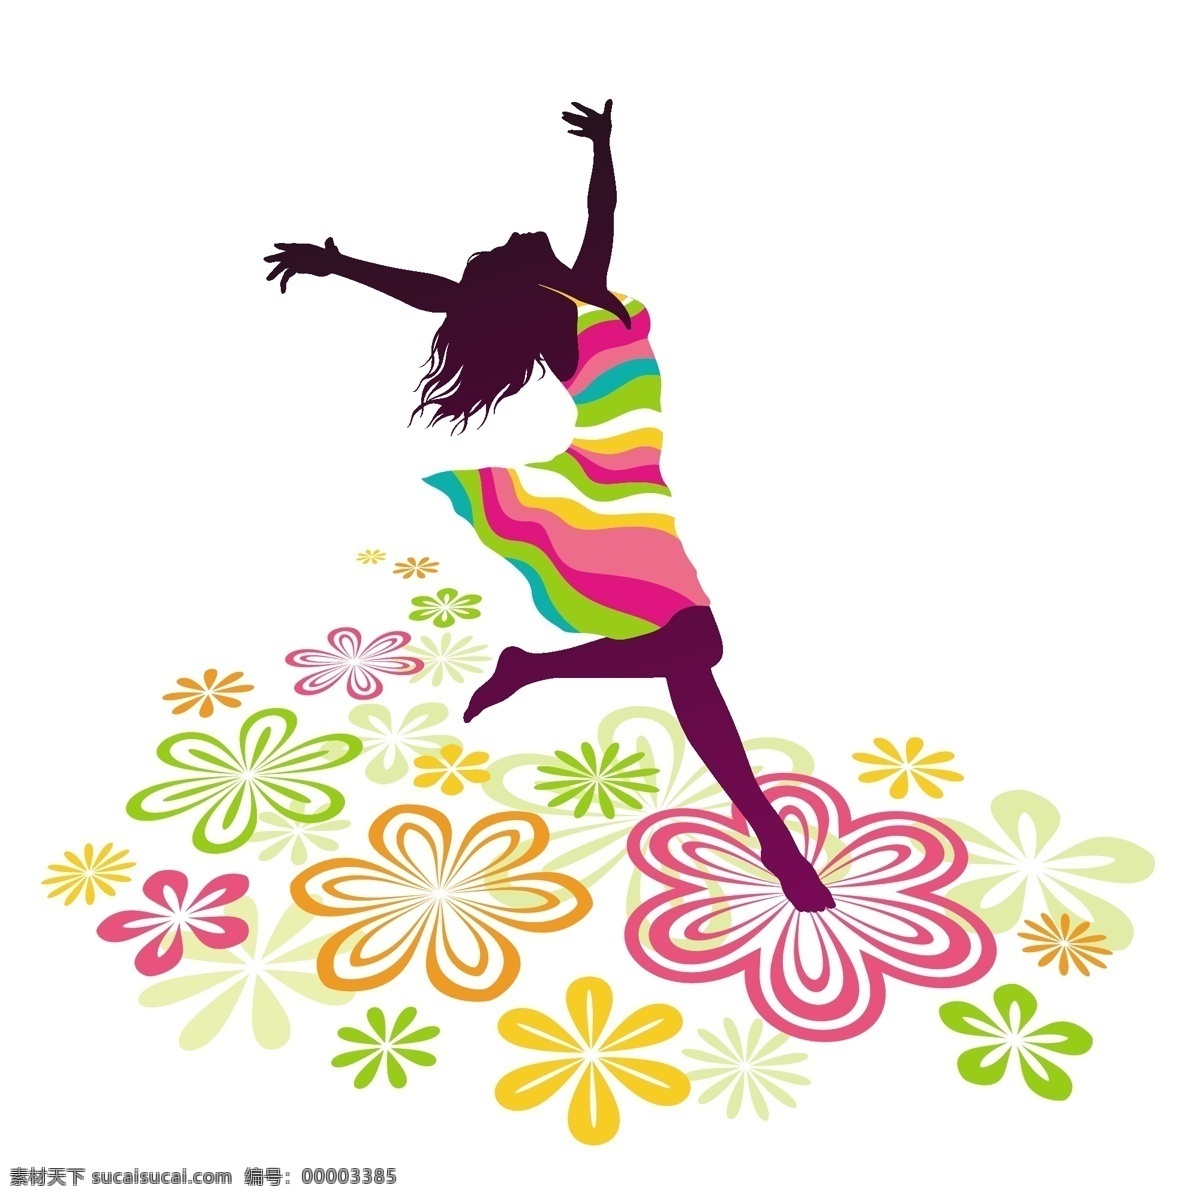 欢乐 潮流 女性 剪影 矢量 彩色 插图 个性 花 女人 平面 平面设计 矢量素材 装饰 海报 现代 其他海报设计